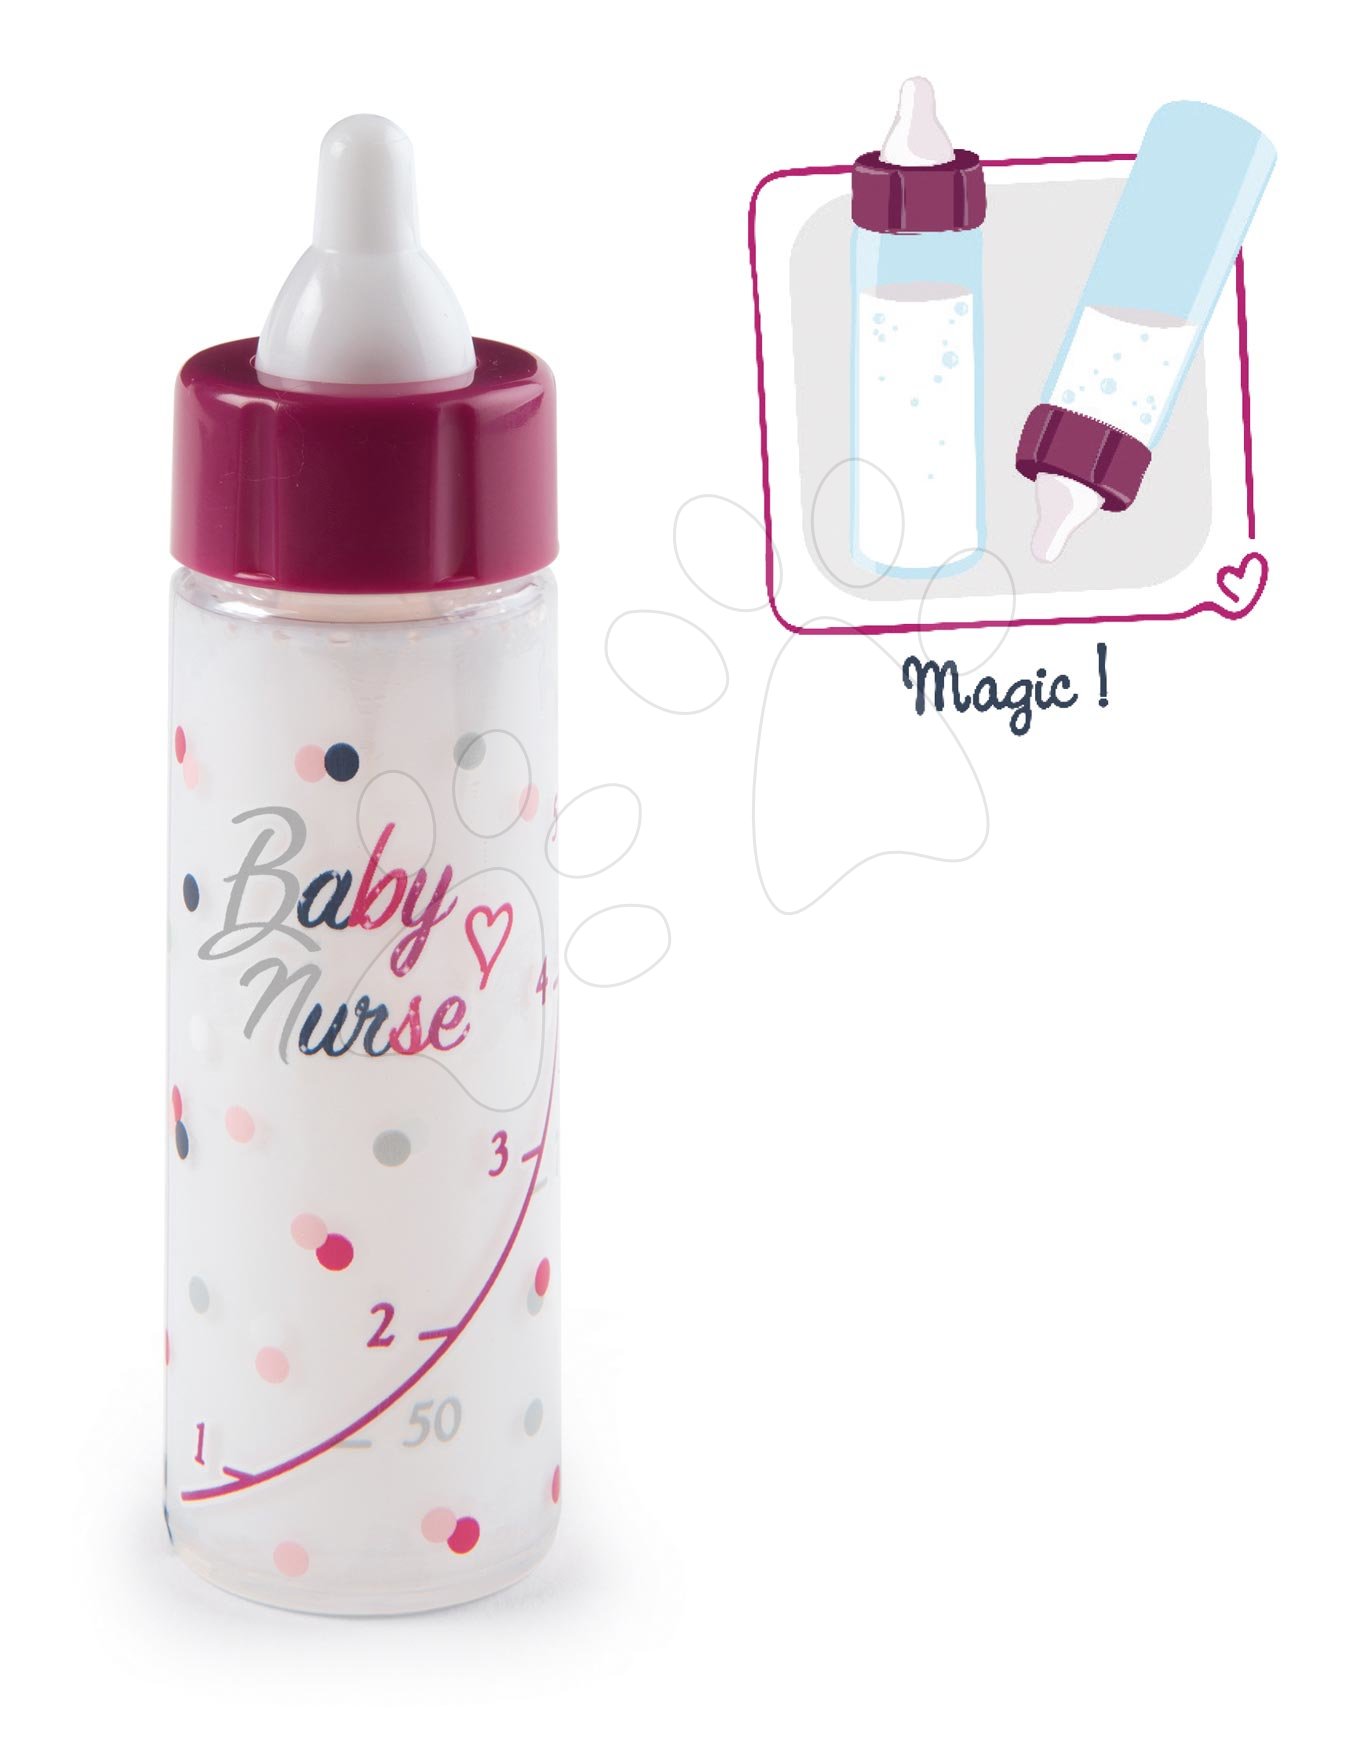 Játékbaba kiegészítők - Cumisüveg apadó tejjel Violette Baby Nurse Smoby játékbabának 12 hó kortól